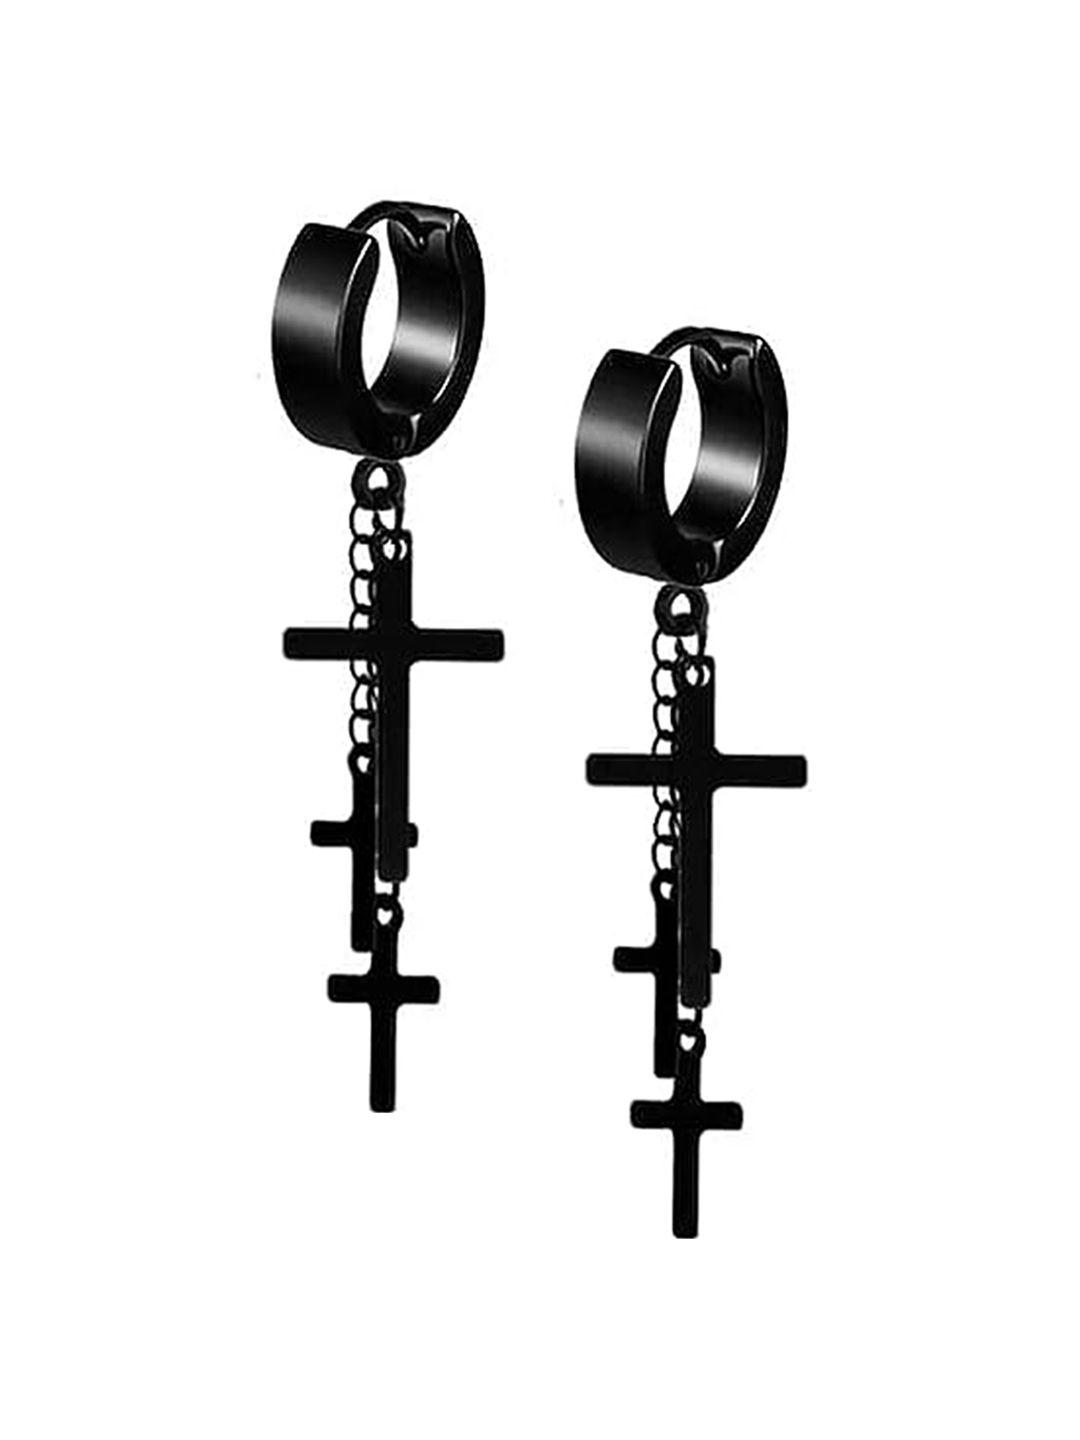 krystalz stainless steel contemporary half hoop earrings